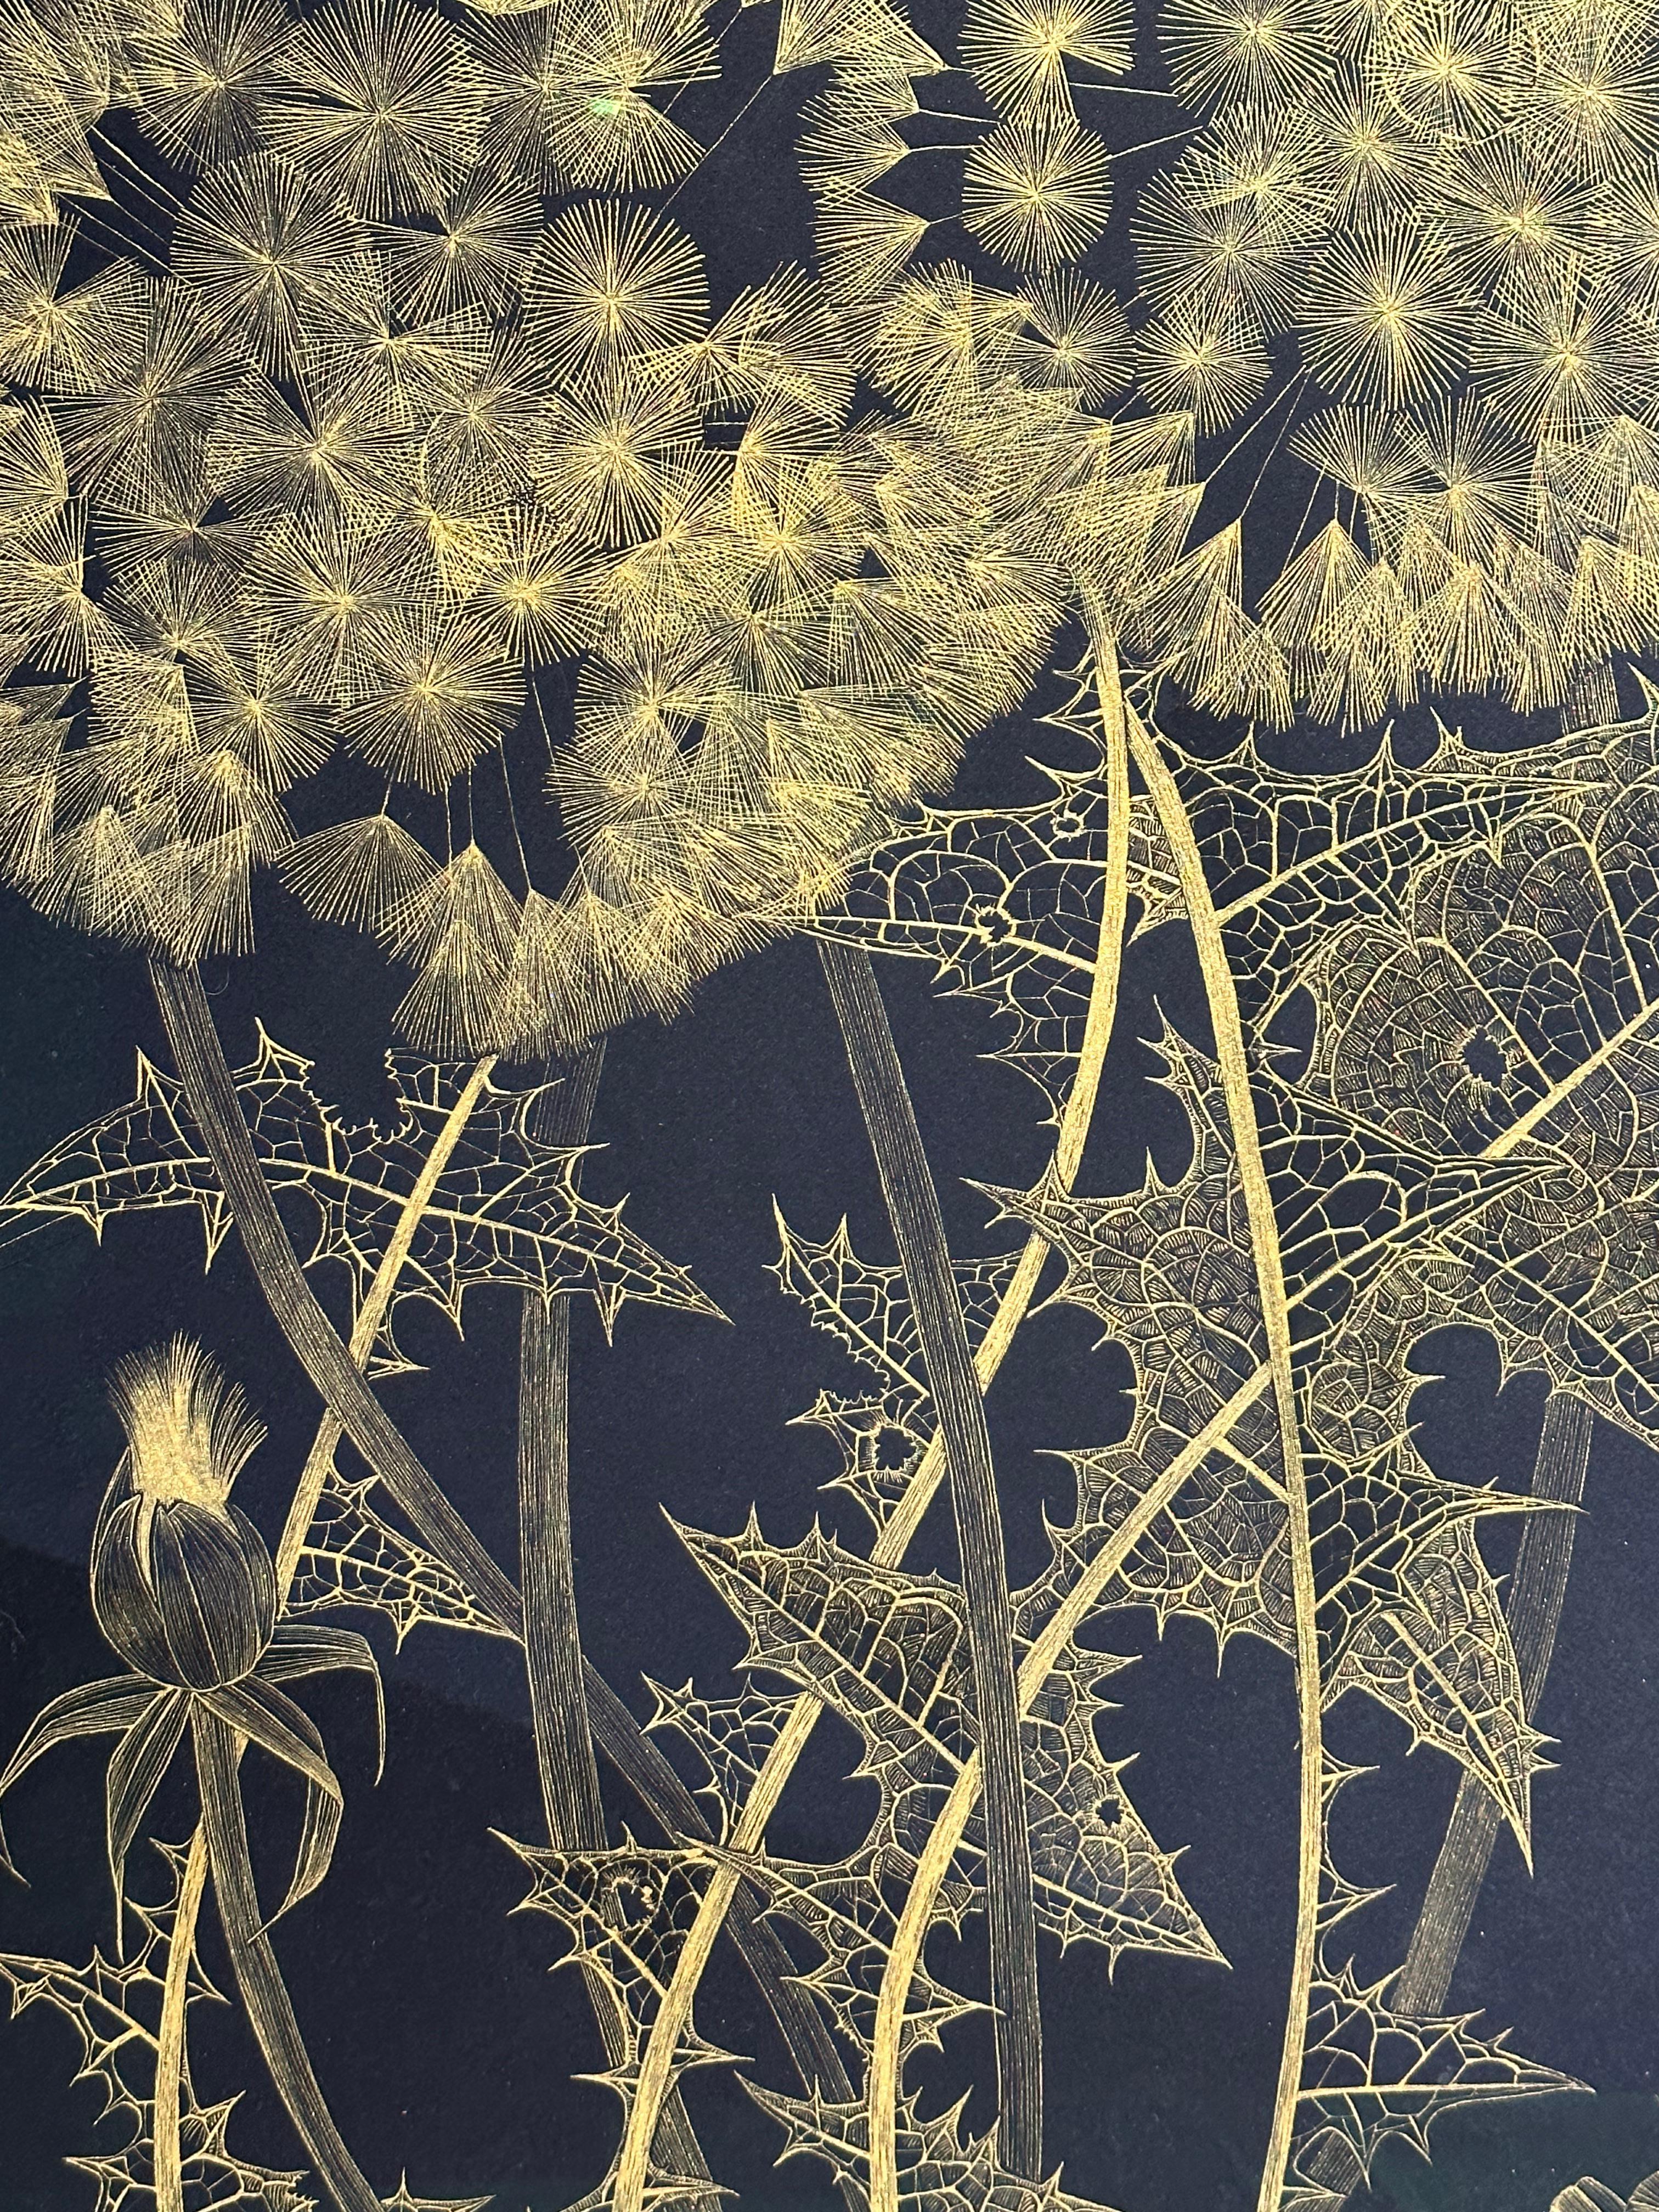 Große Löwenzahn Sechs, Botanische Malerei Schwarz, Gold Blumen, Blätter, Stem 7